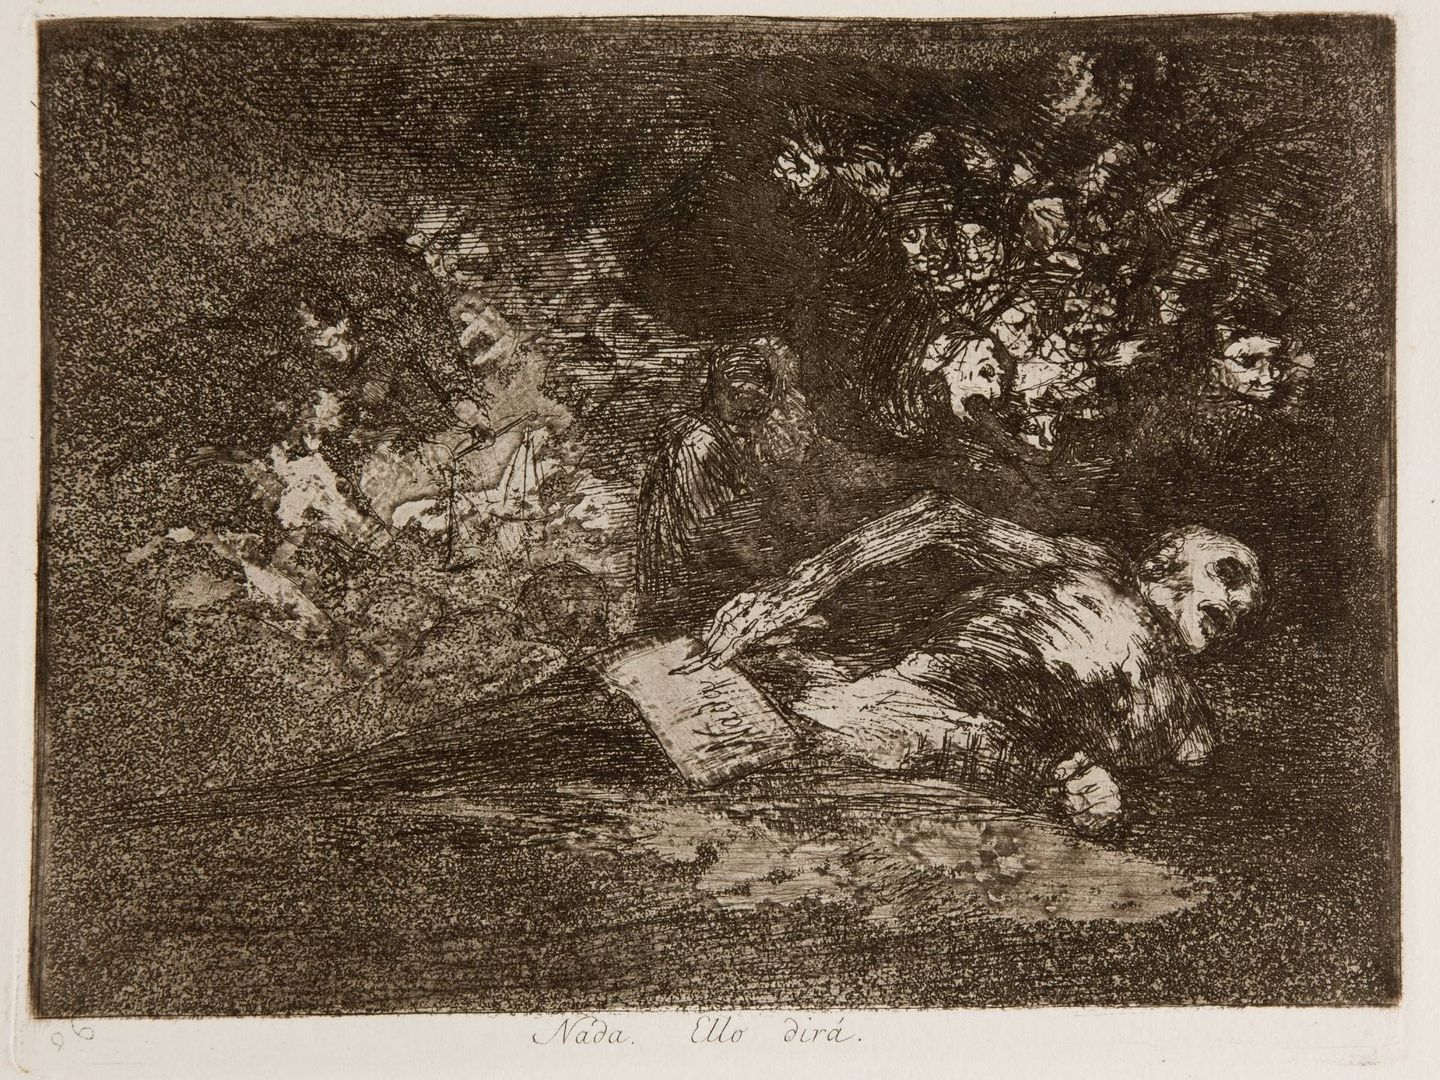 Nada. Ello dirá (de la serie Caprichos enfáticos). Francisco de Goya. 1814-1815. Museo del Prado